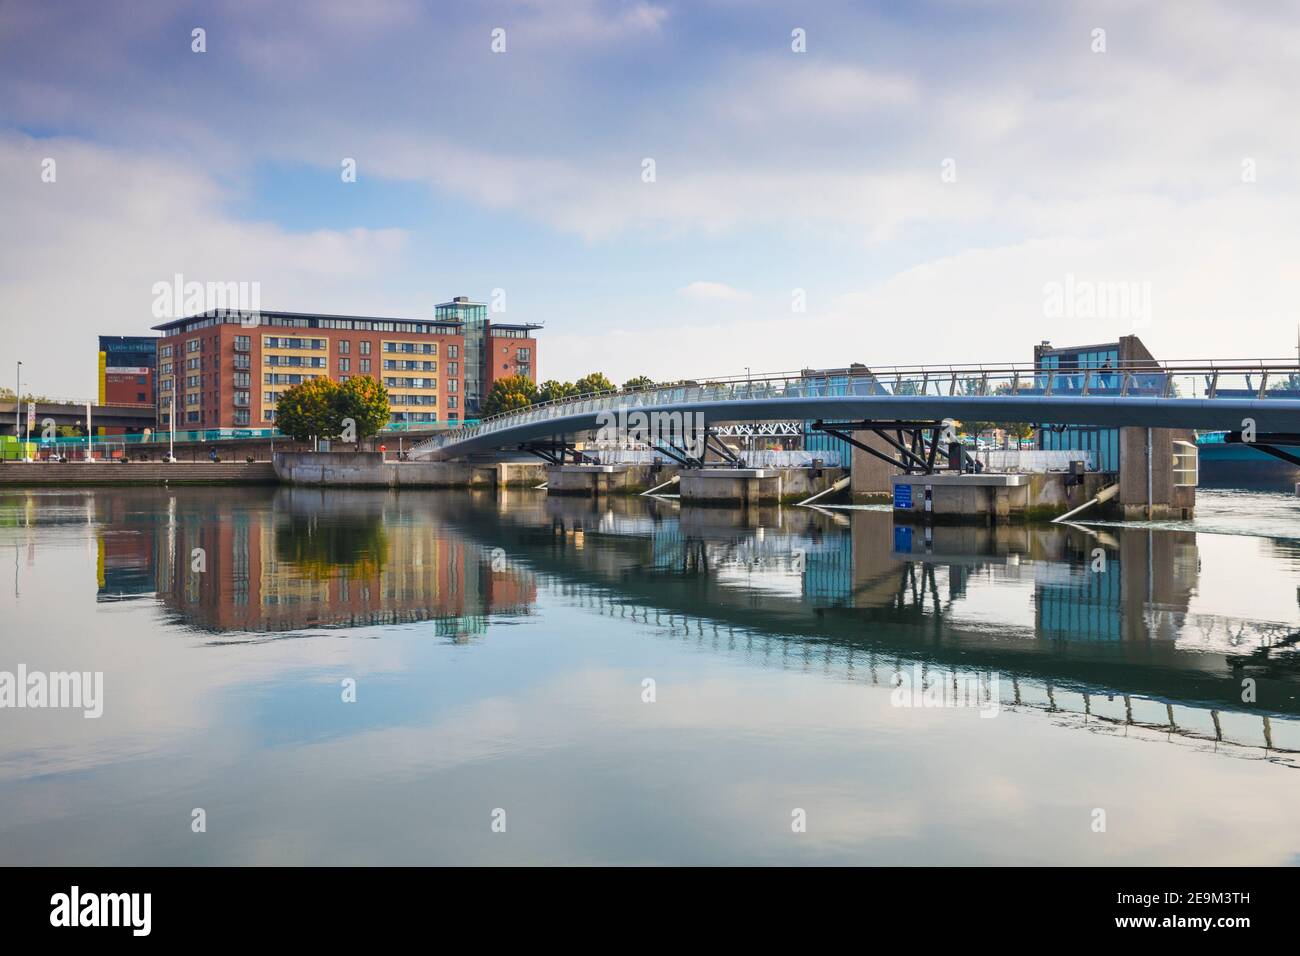 Großbritannien, Nordirland, Belfast, Lagan Weir Fuß- und Fahrradbrücke Stockfoto